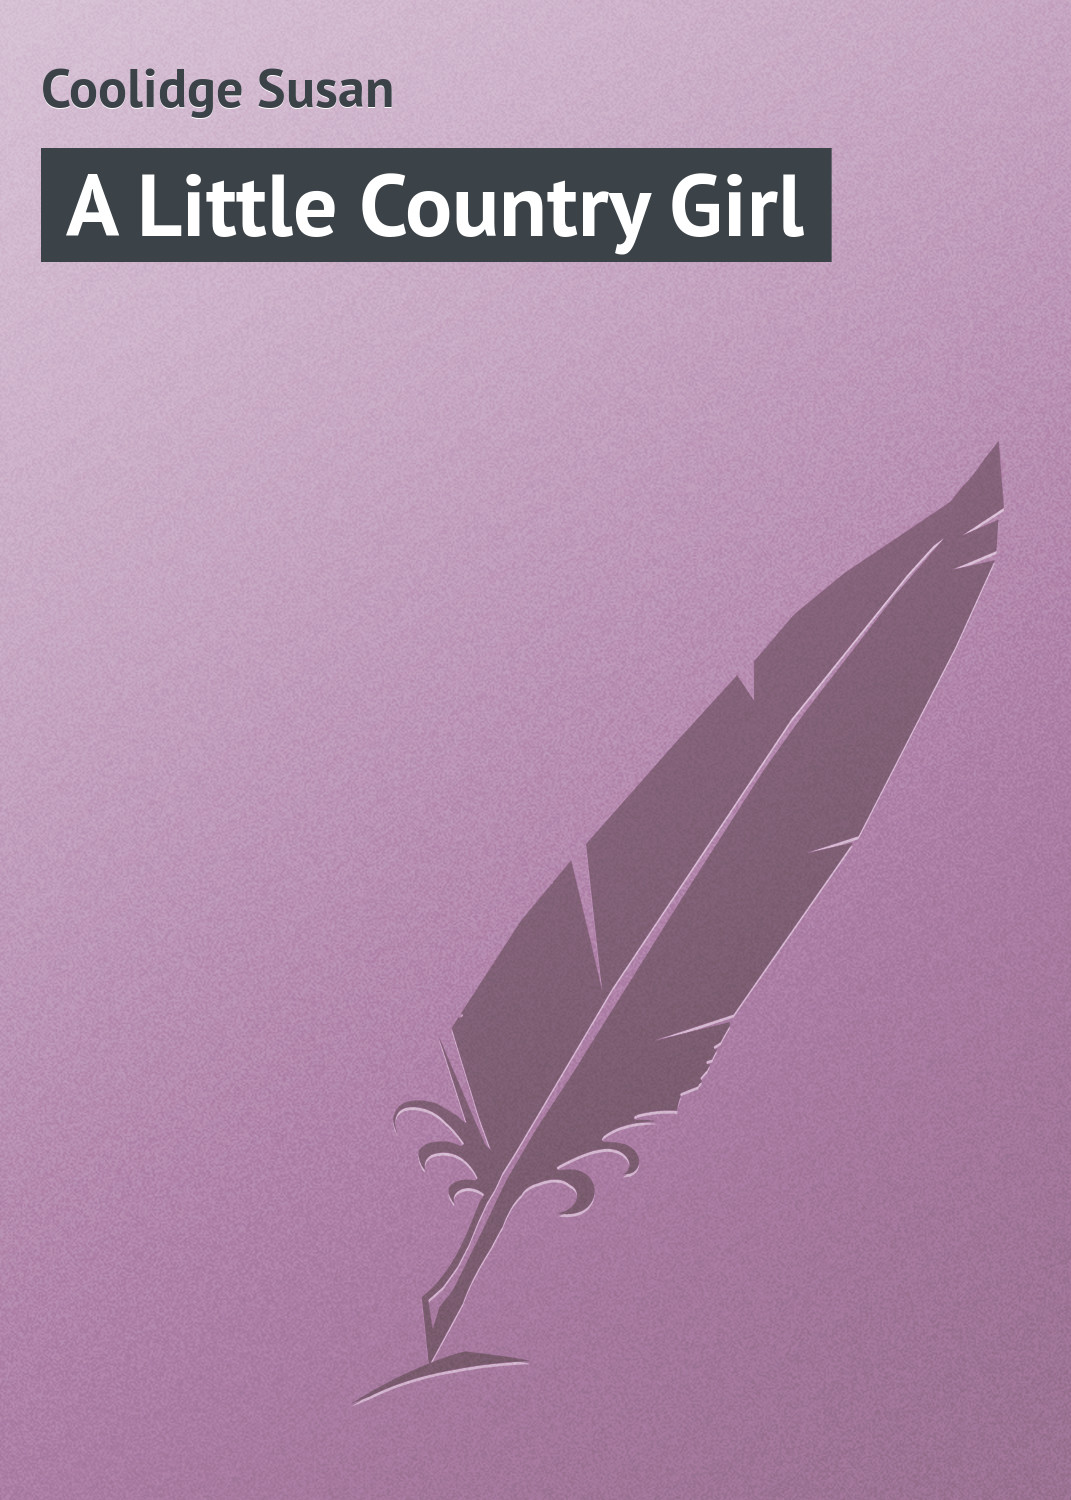 Книга A Little Country Girl из серии , созданная Susan Coolidge, может относится к жанру Зарубежная классика, Зарубежные детские книги. Стоимость электронной книги A Little Country Girl с идентификатором 23154555 составляет 5.99 руб.